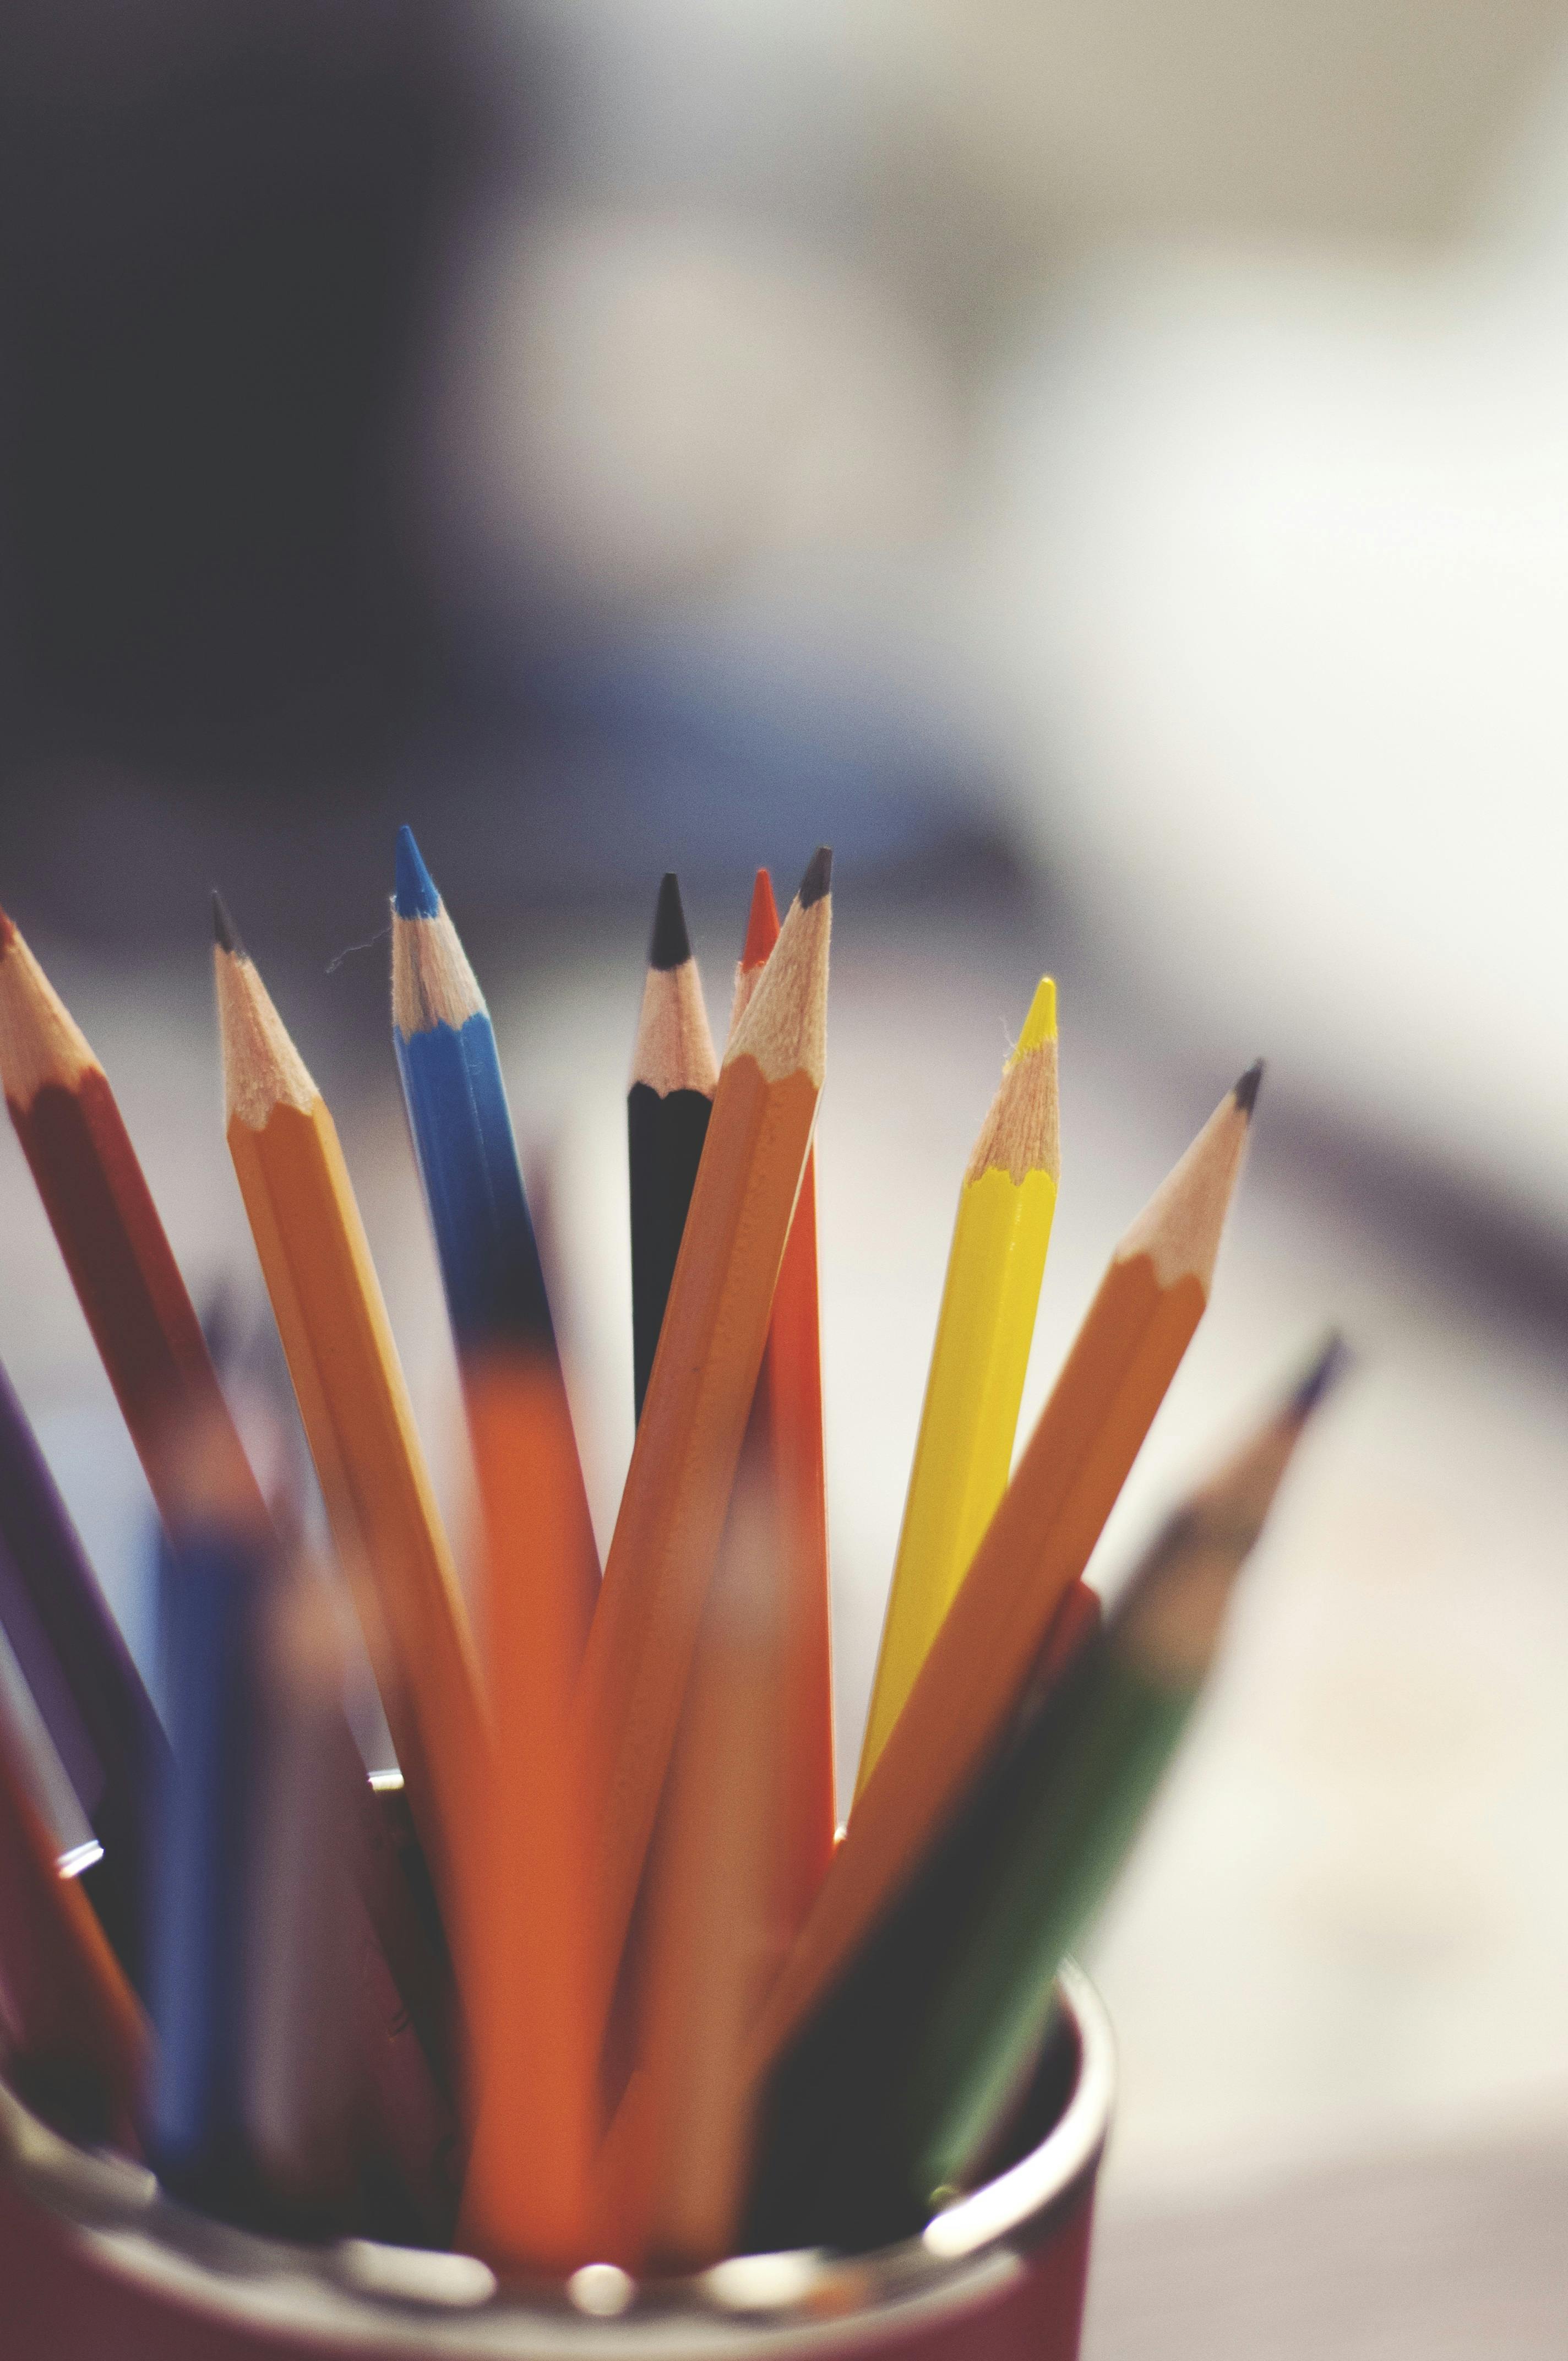 Colored Pencils Wallpaper Colored Pencil Art Stock Photo 761452654 |  Shutterstock